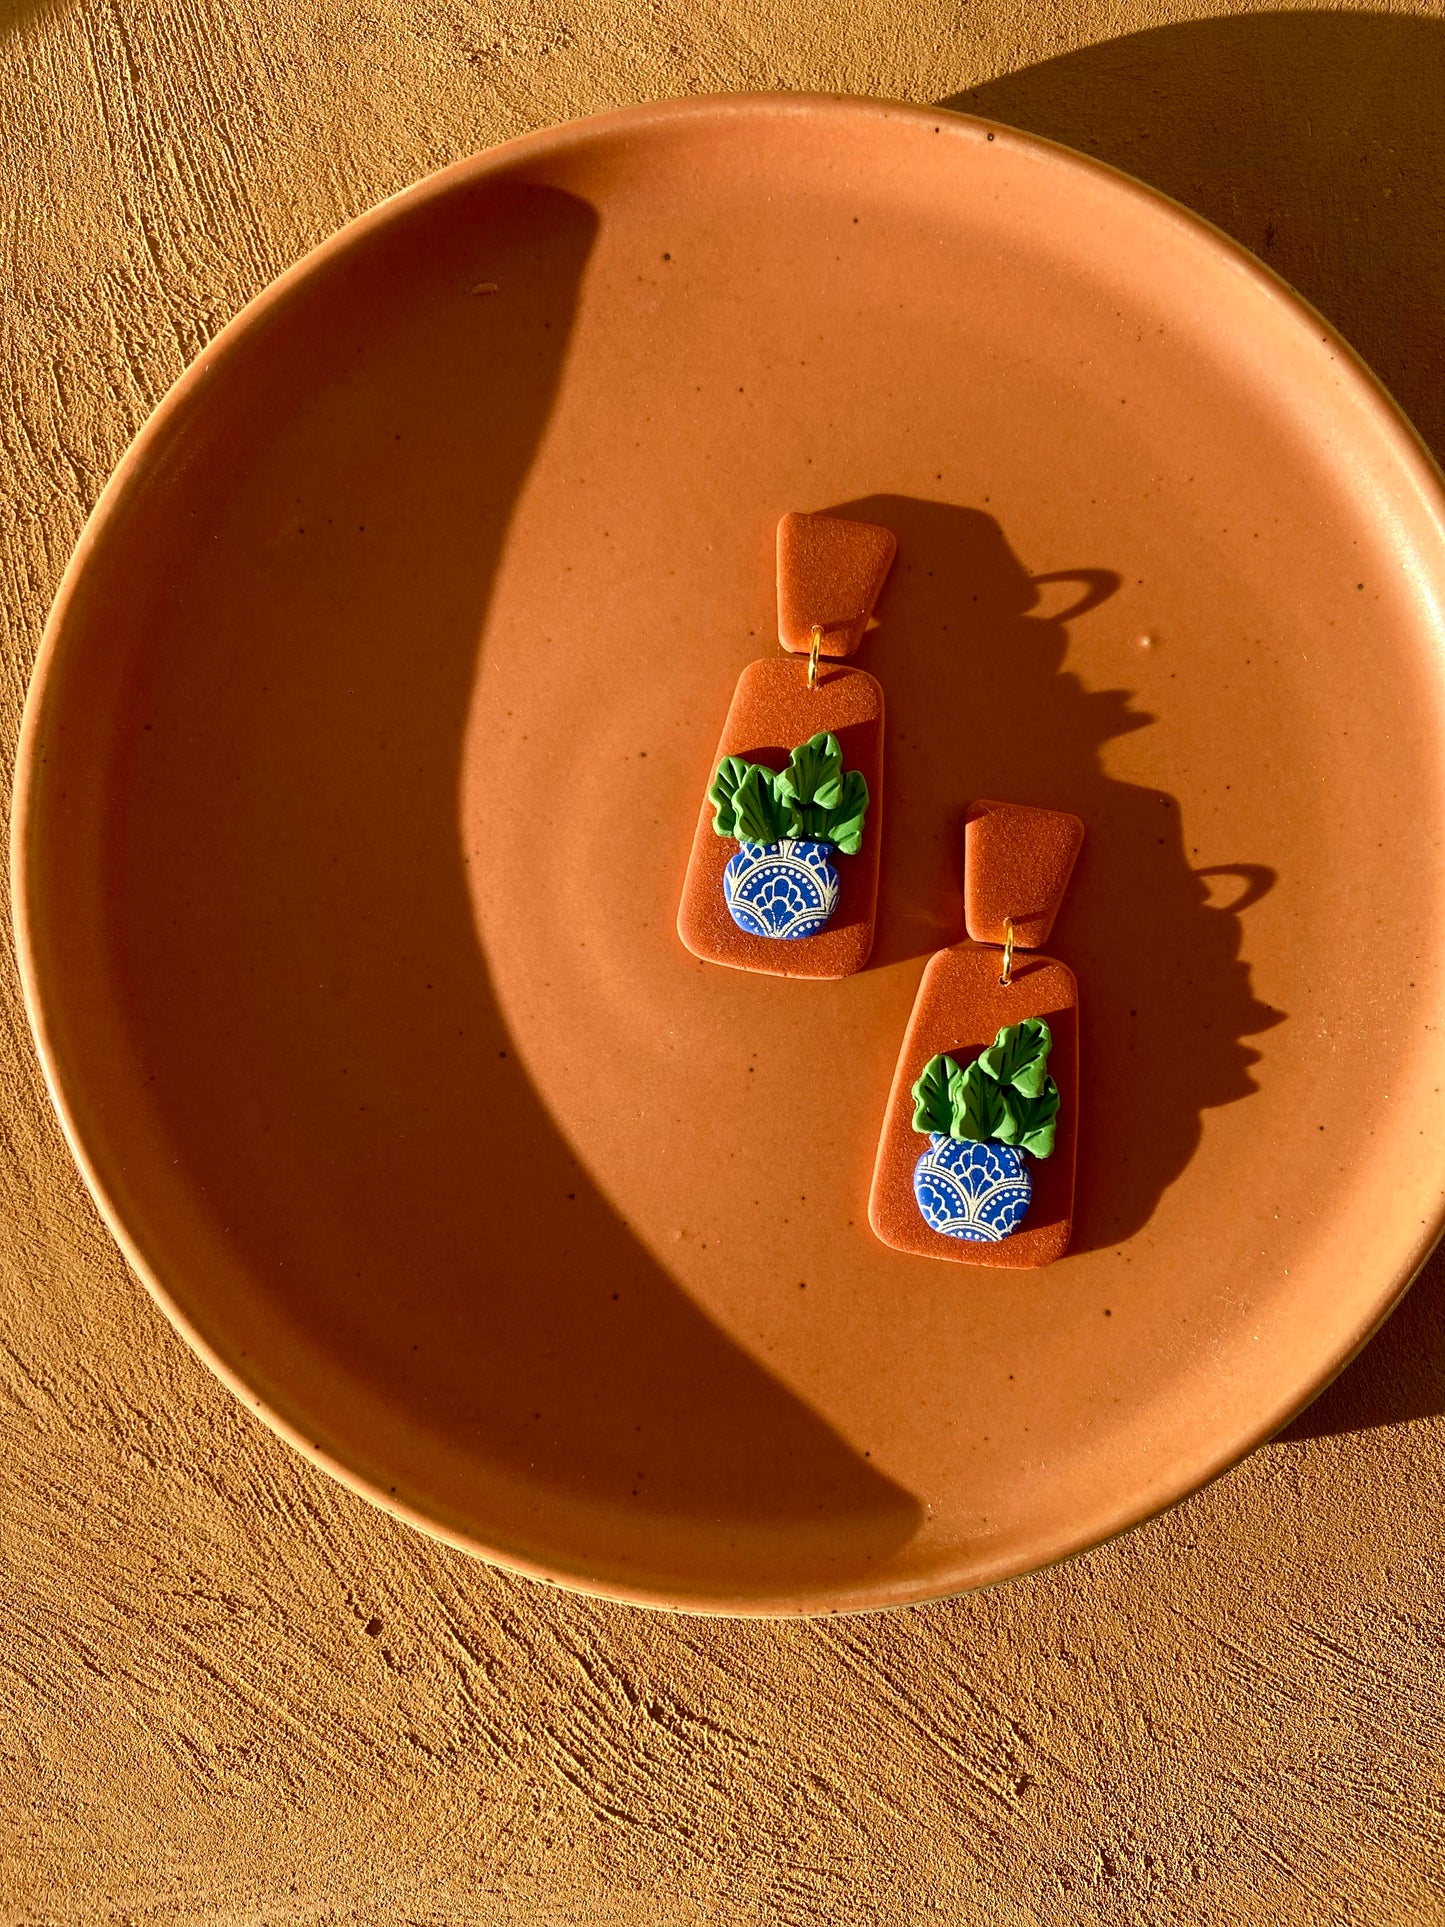 Talavera pottery plant earring